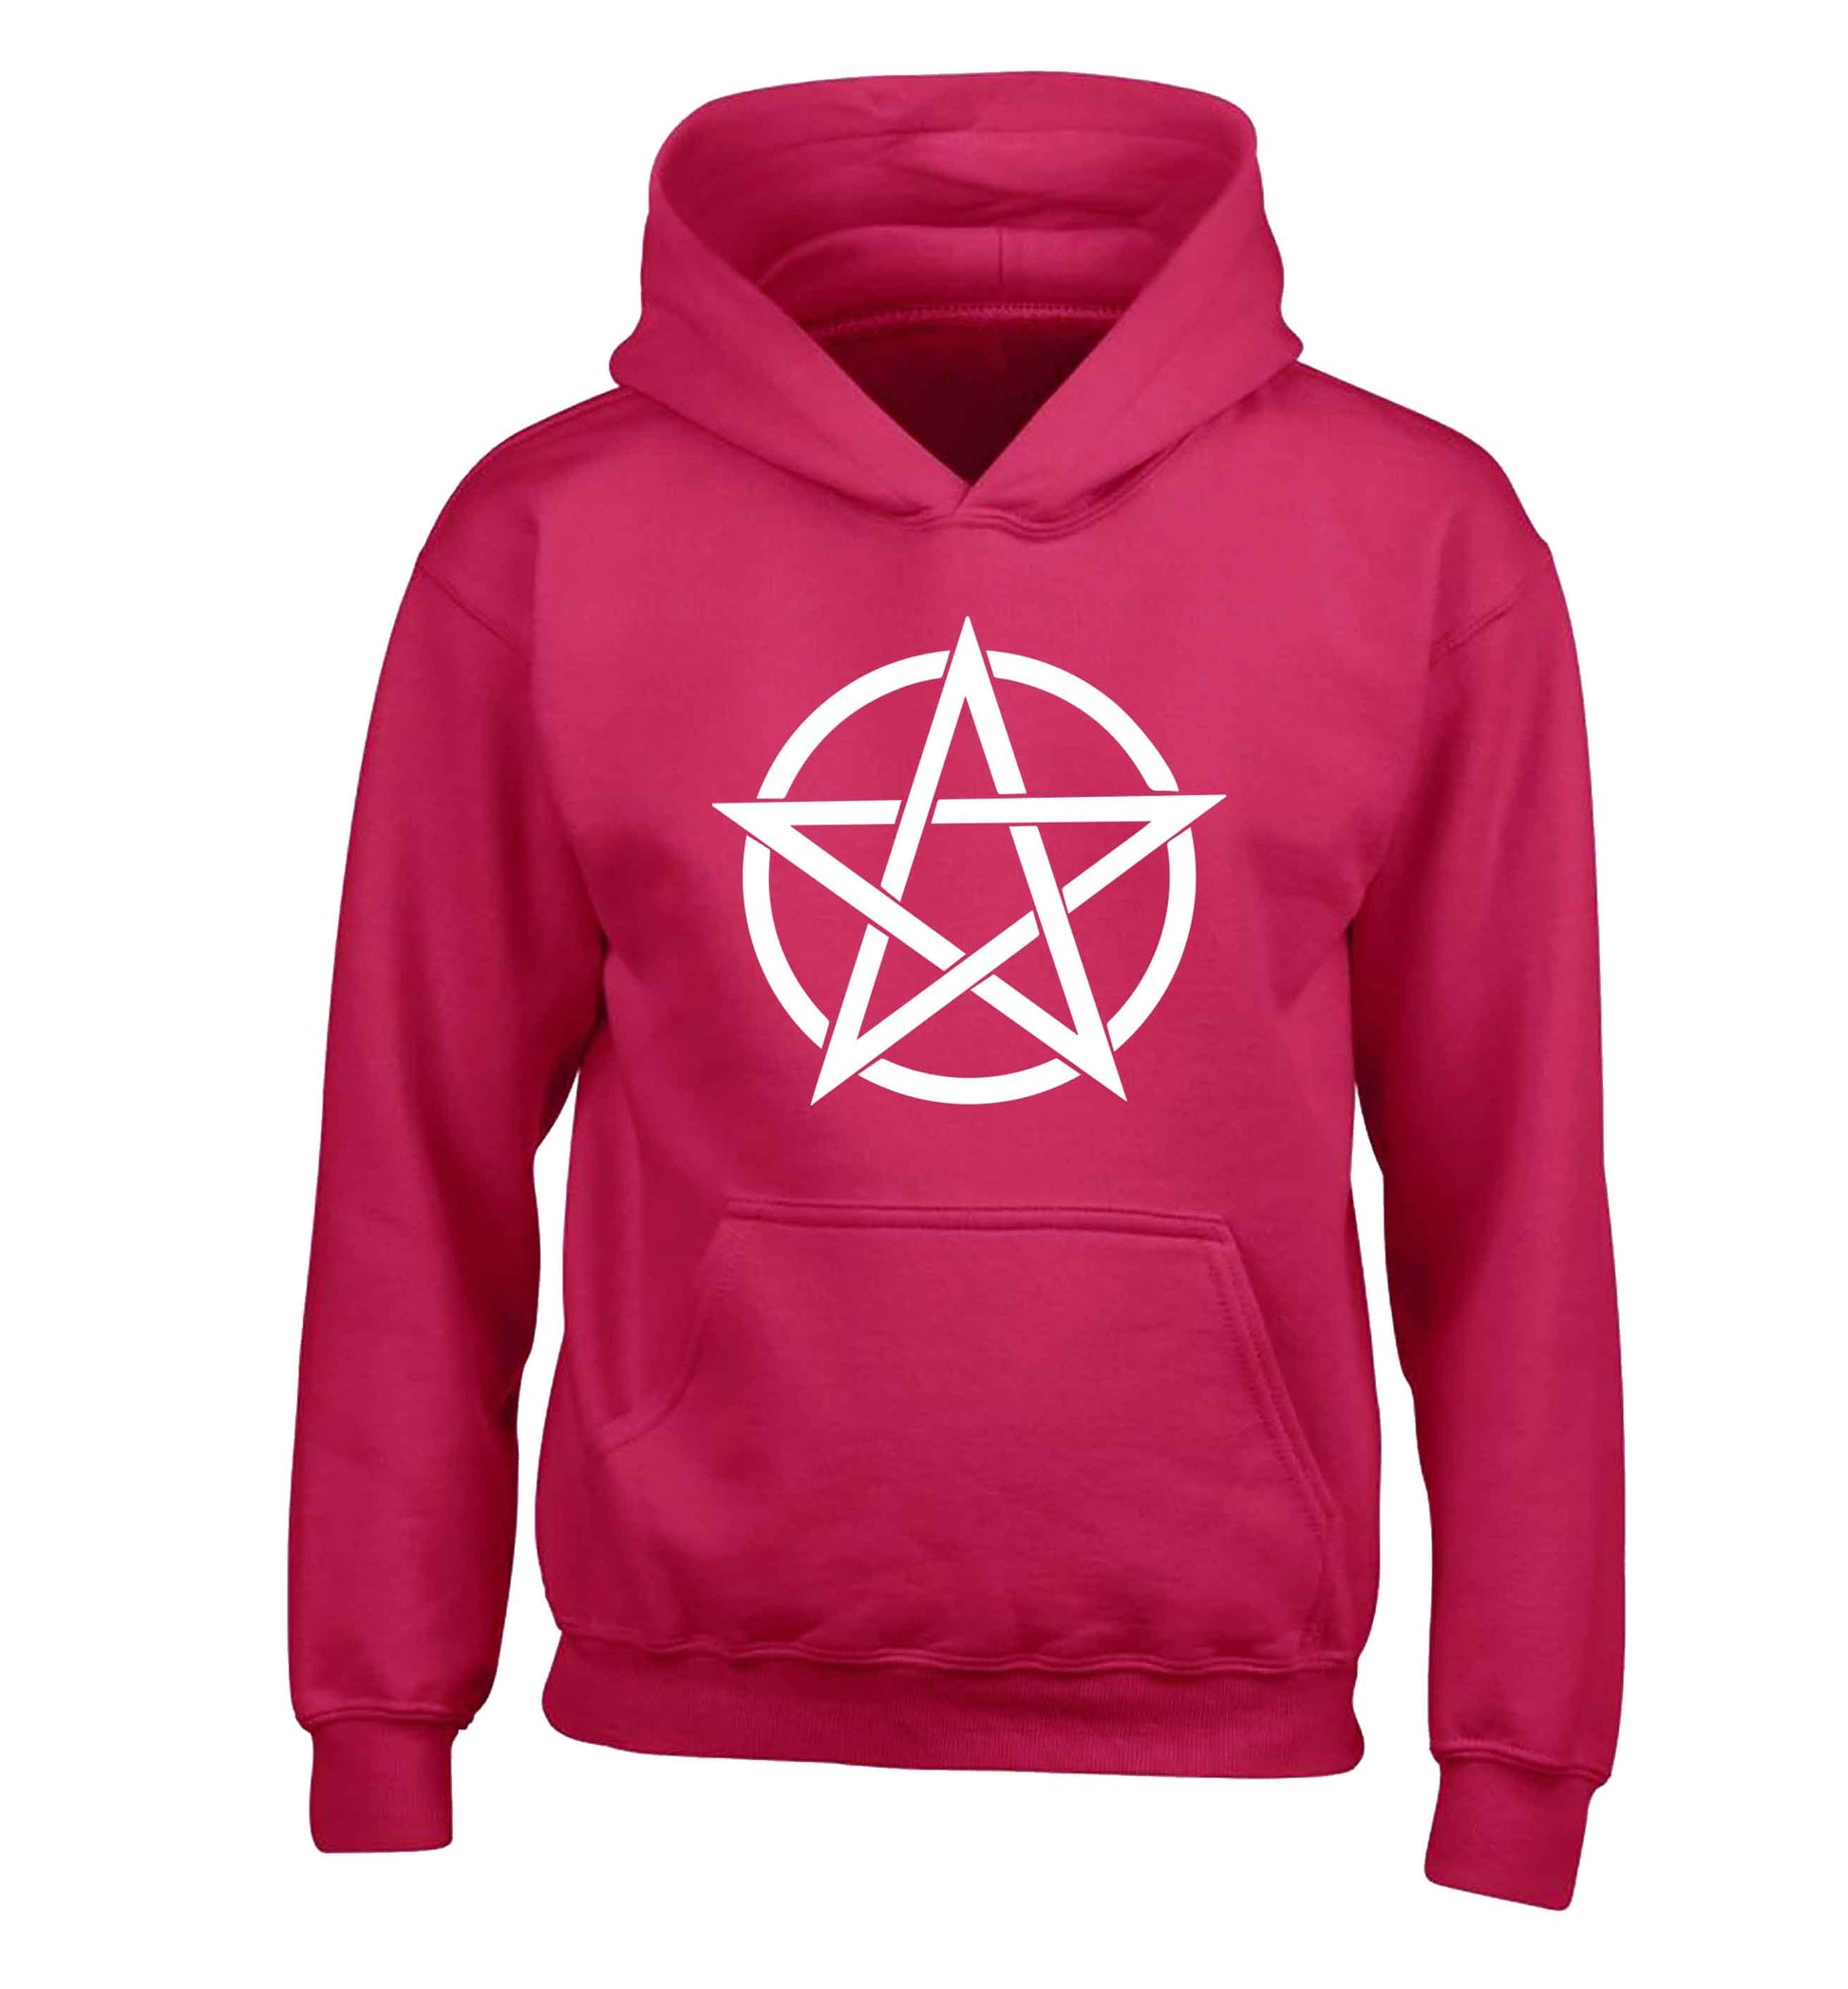 Pentagram symbol children's pink hoodie 12-13 Years